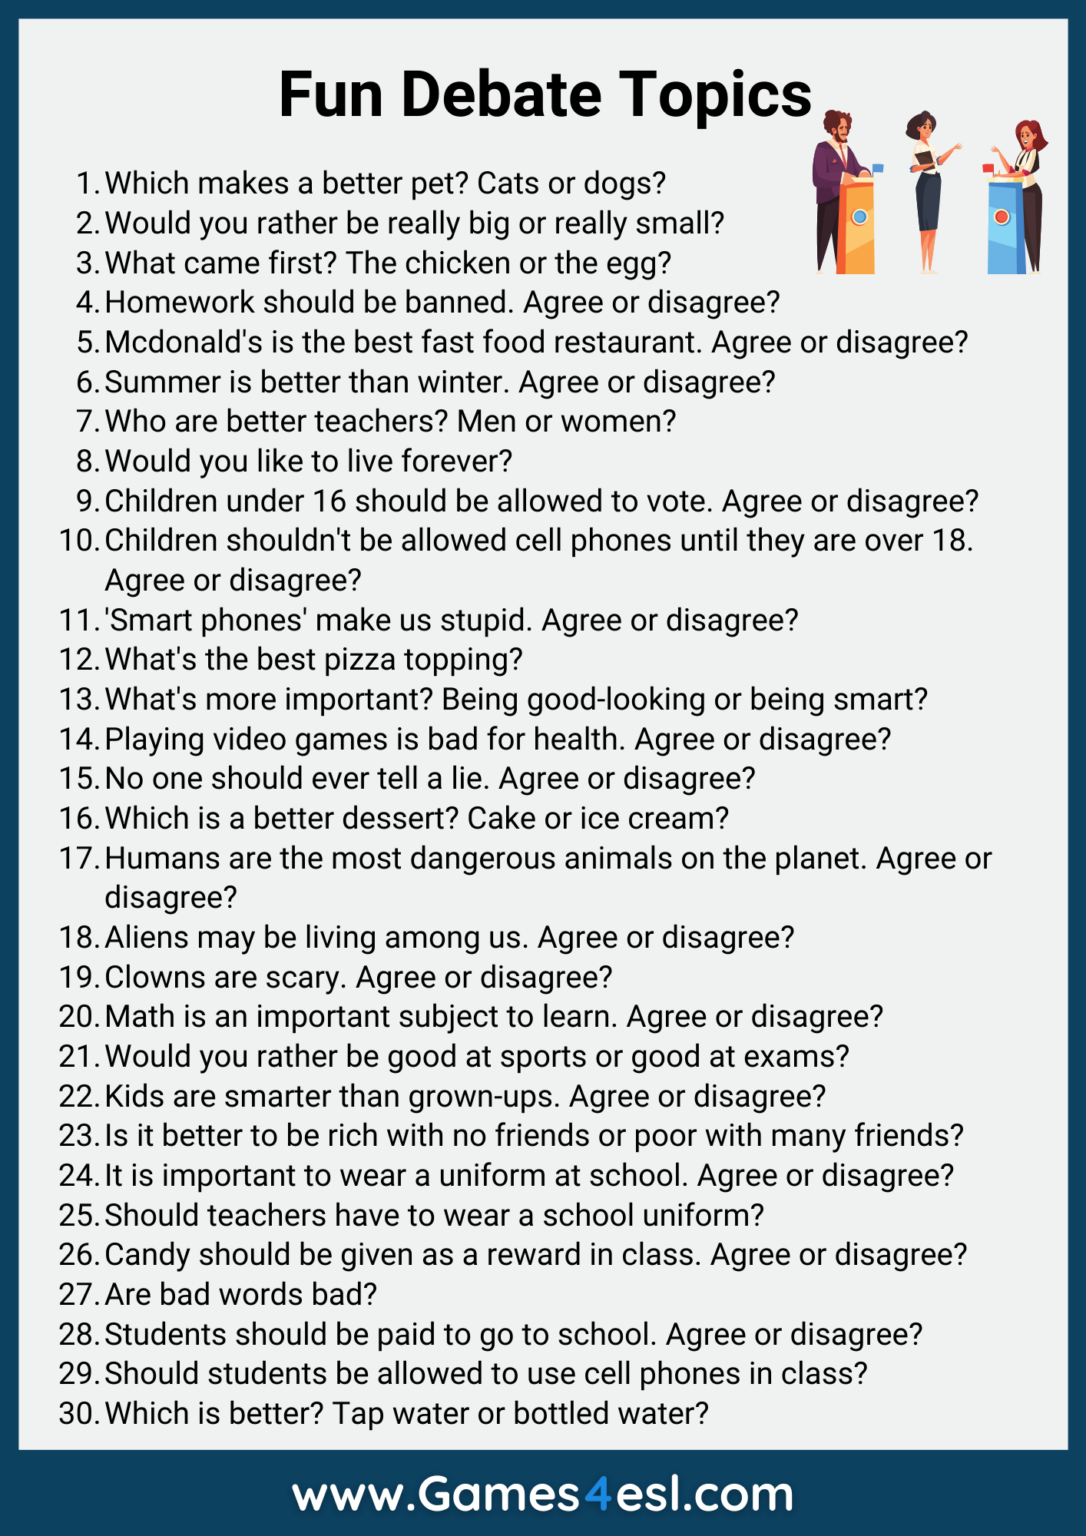 30 Funny Debate Topics List Of Fun Topics For Debate Games4esl